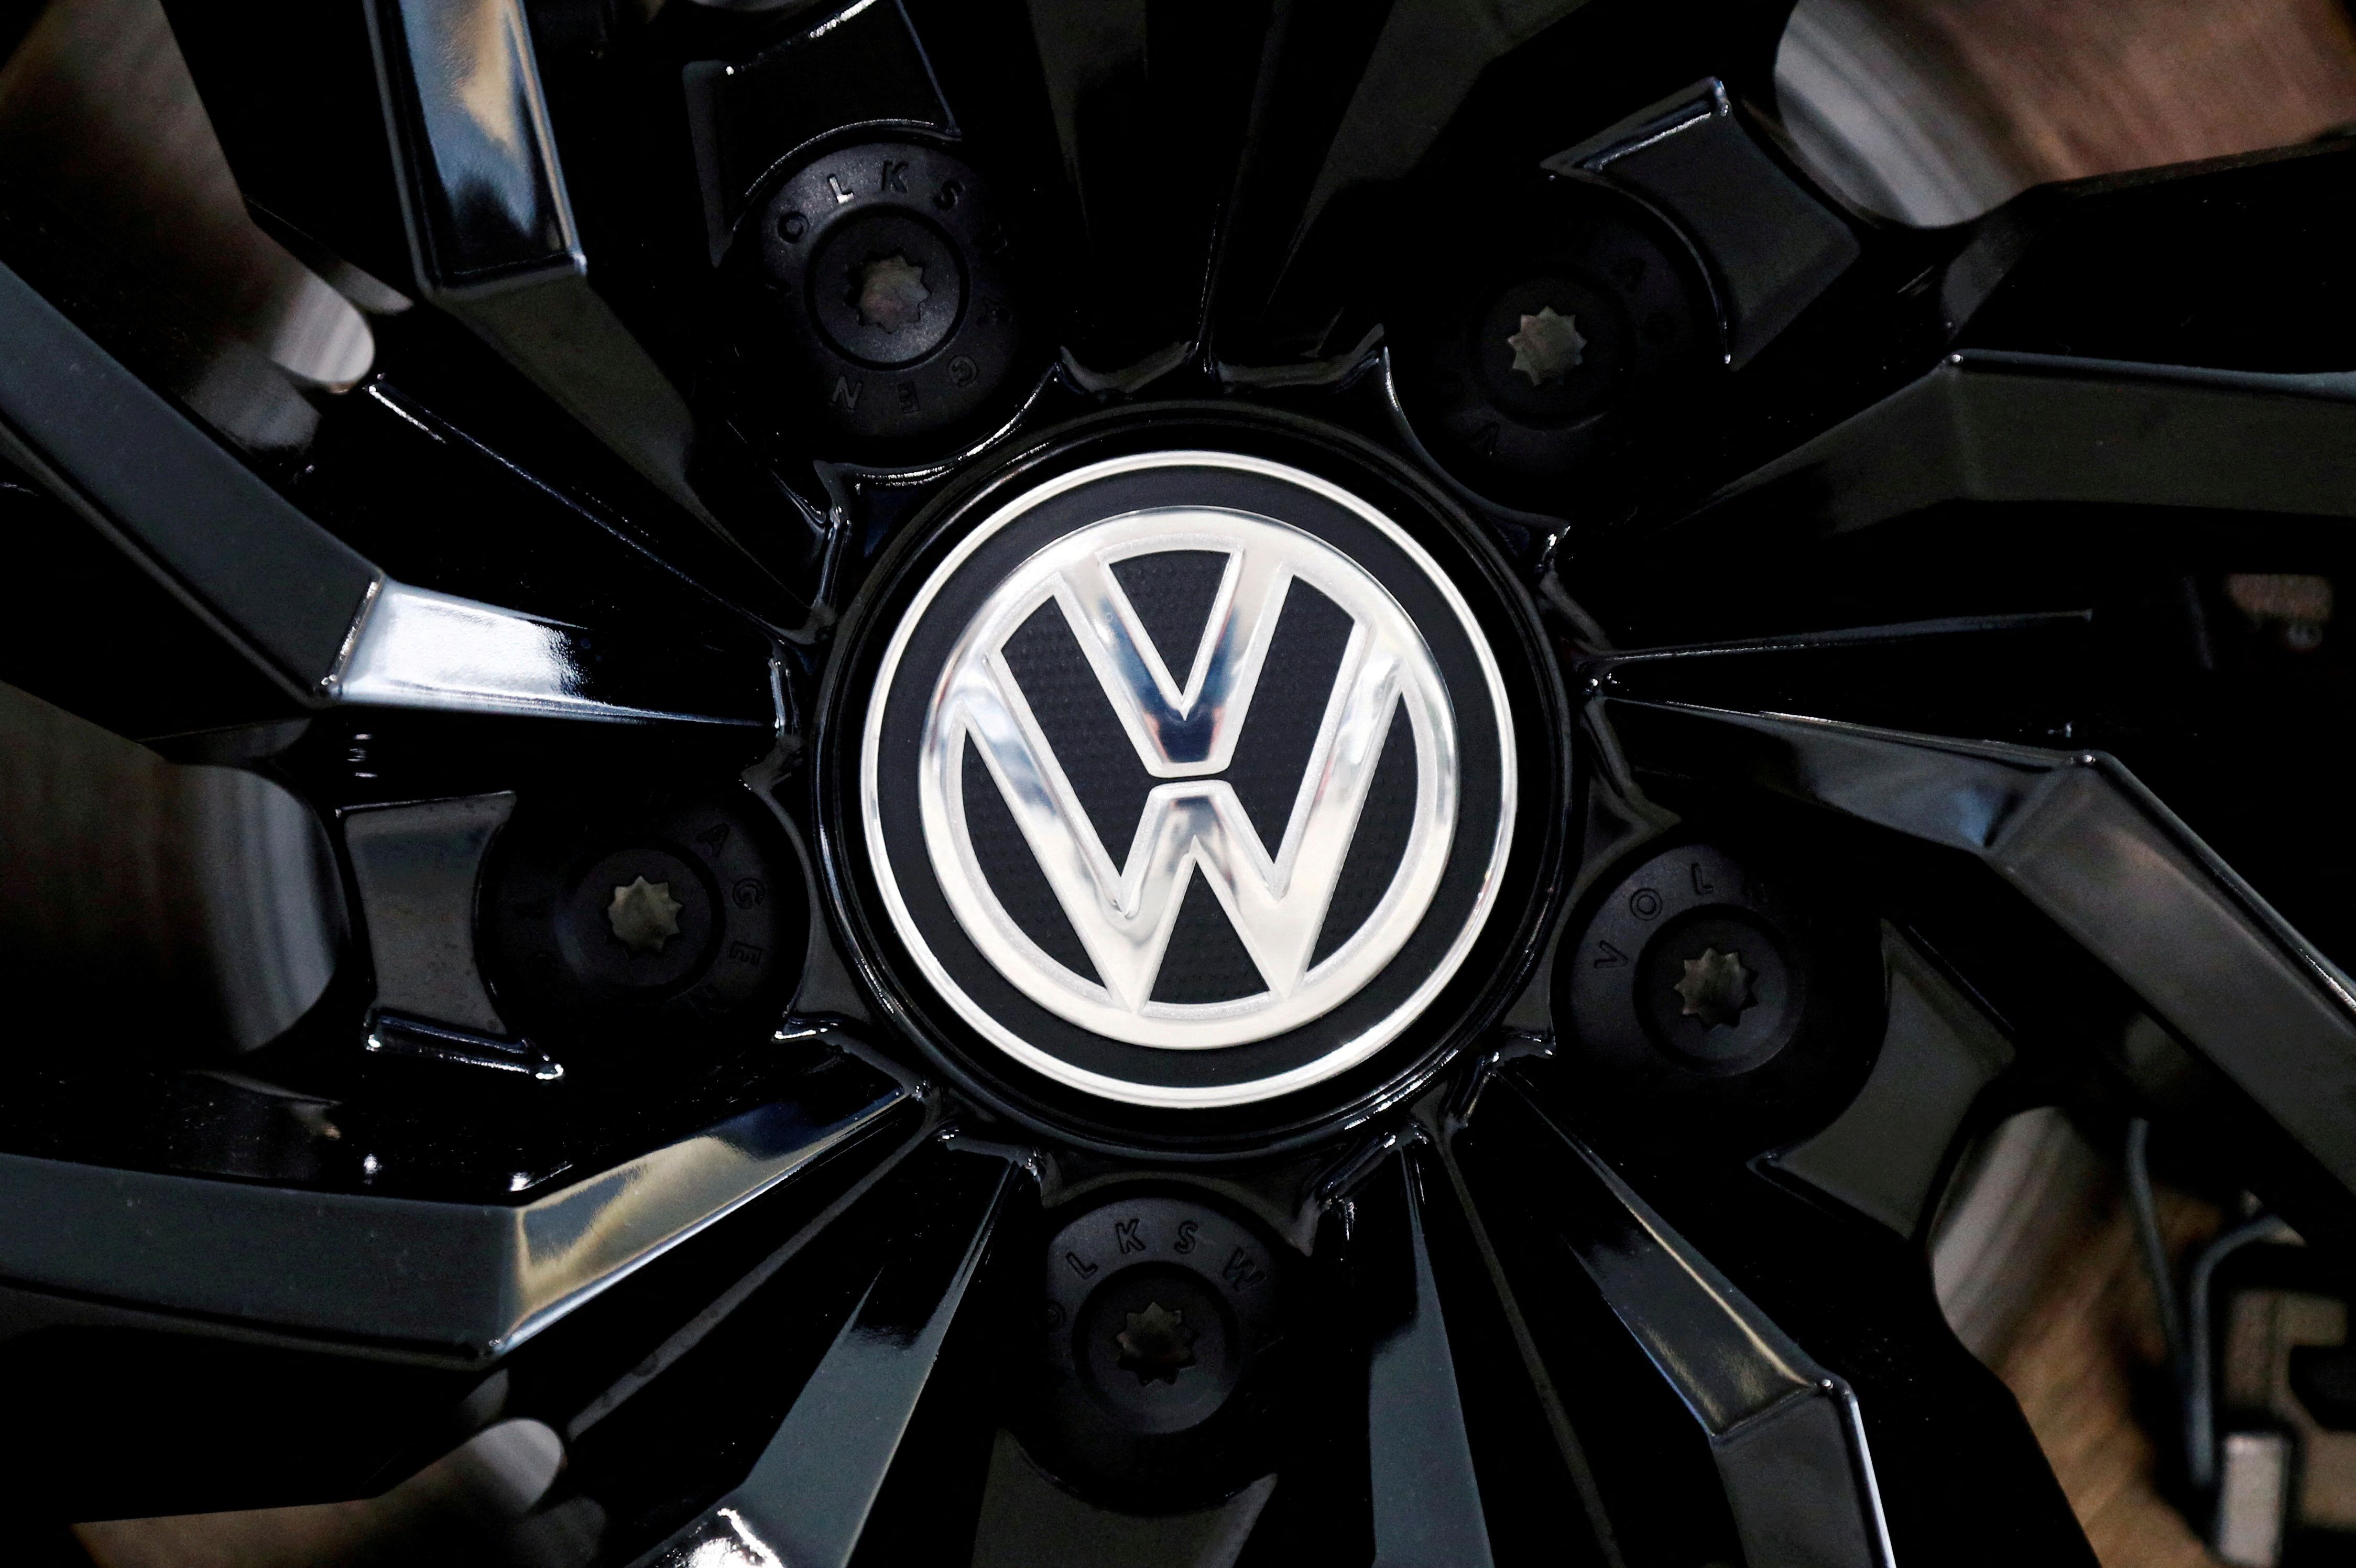 122 milliards d'euros : le plan colossal de Volkswagen pour accélérer dans l'électrique malgré le blocage allemand